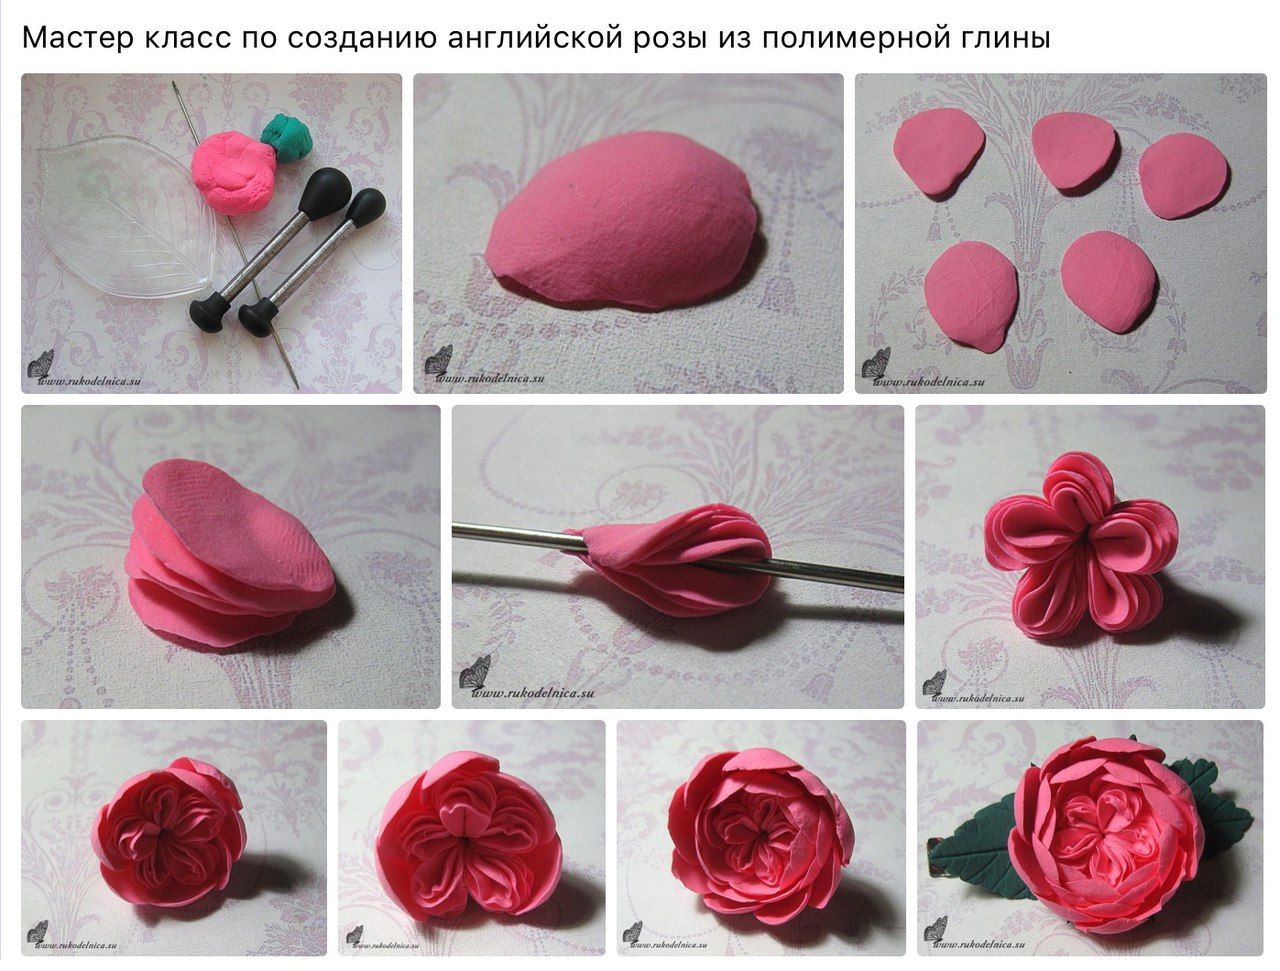 Выкройки розы из фоамирана: шаблон в натуральную величину для начинающих